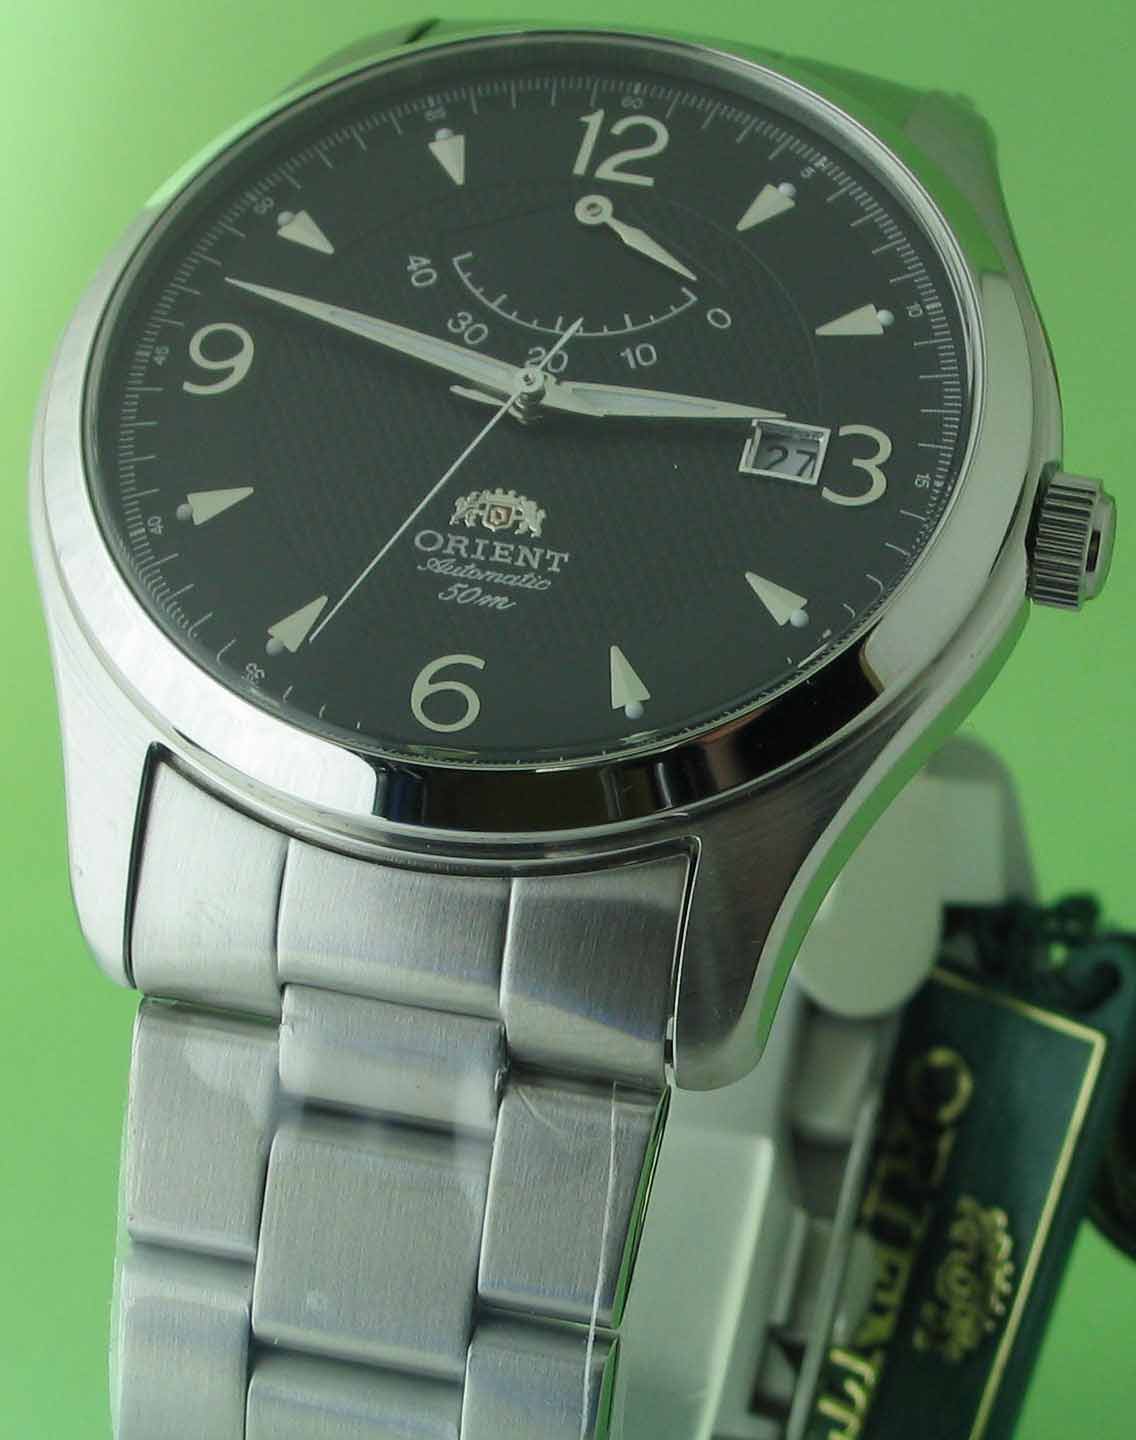 นาฬิกาออโต้รุ่นใหม่ที่มีฟั่งชั่นบอกผลังลาน ขนาดใหญ่คลาสสิค